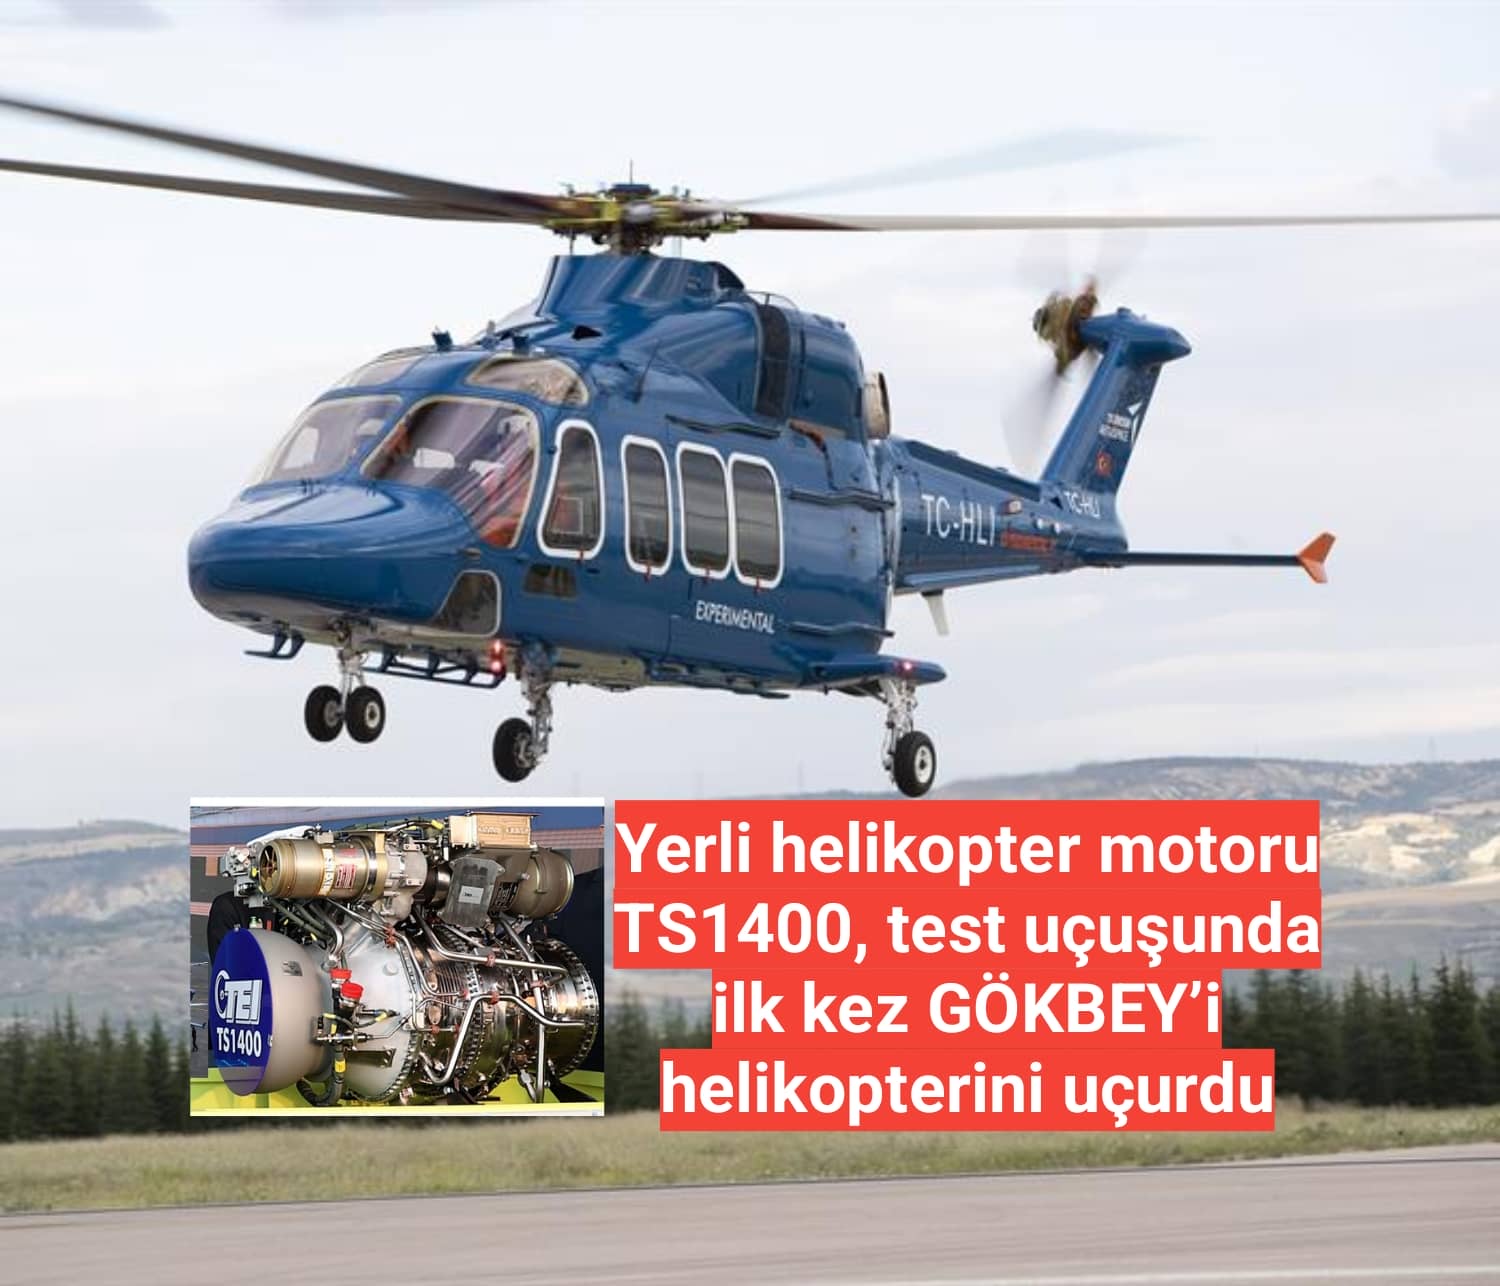 Yerli helikopter motoru TS1400, test uçuşunda ilk kez GÖKBEY’i helikopterini uçurdu